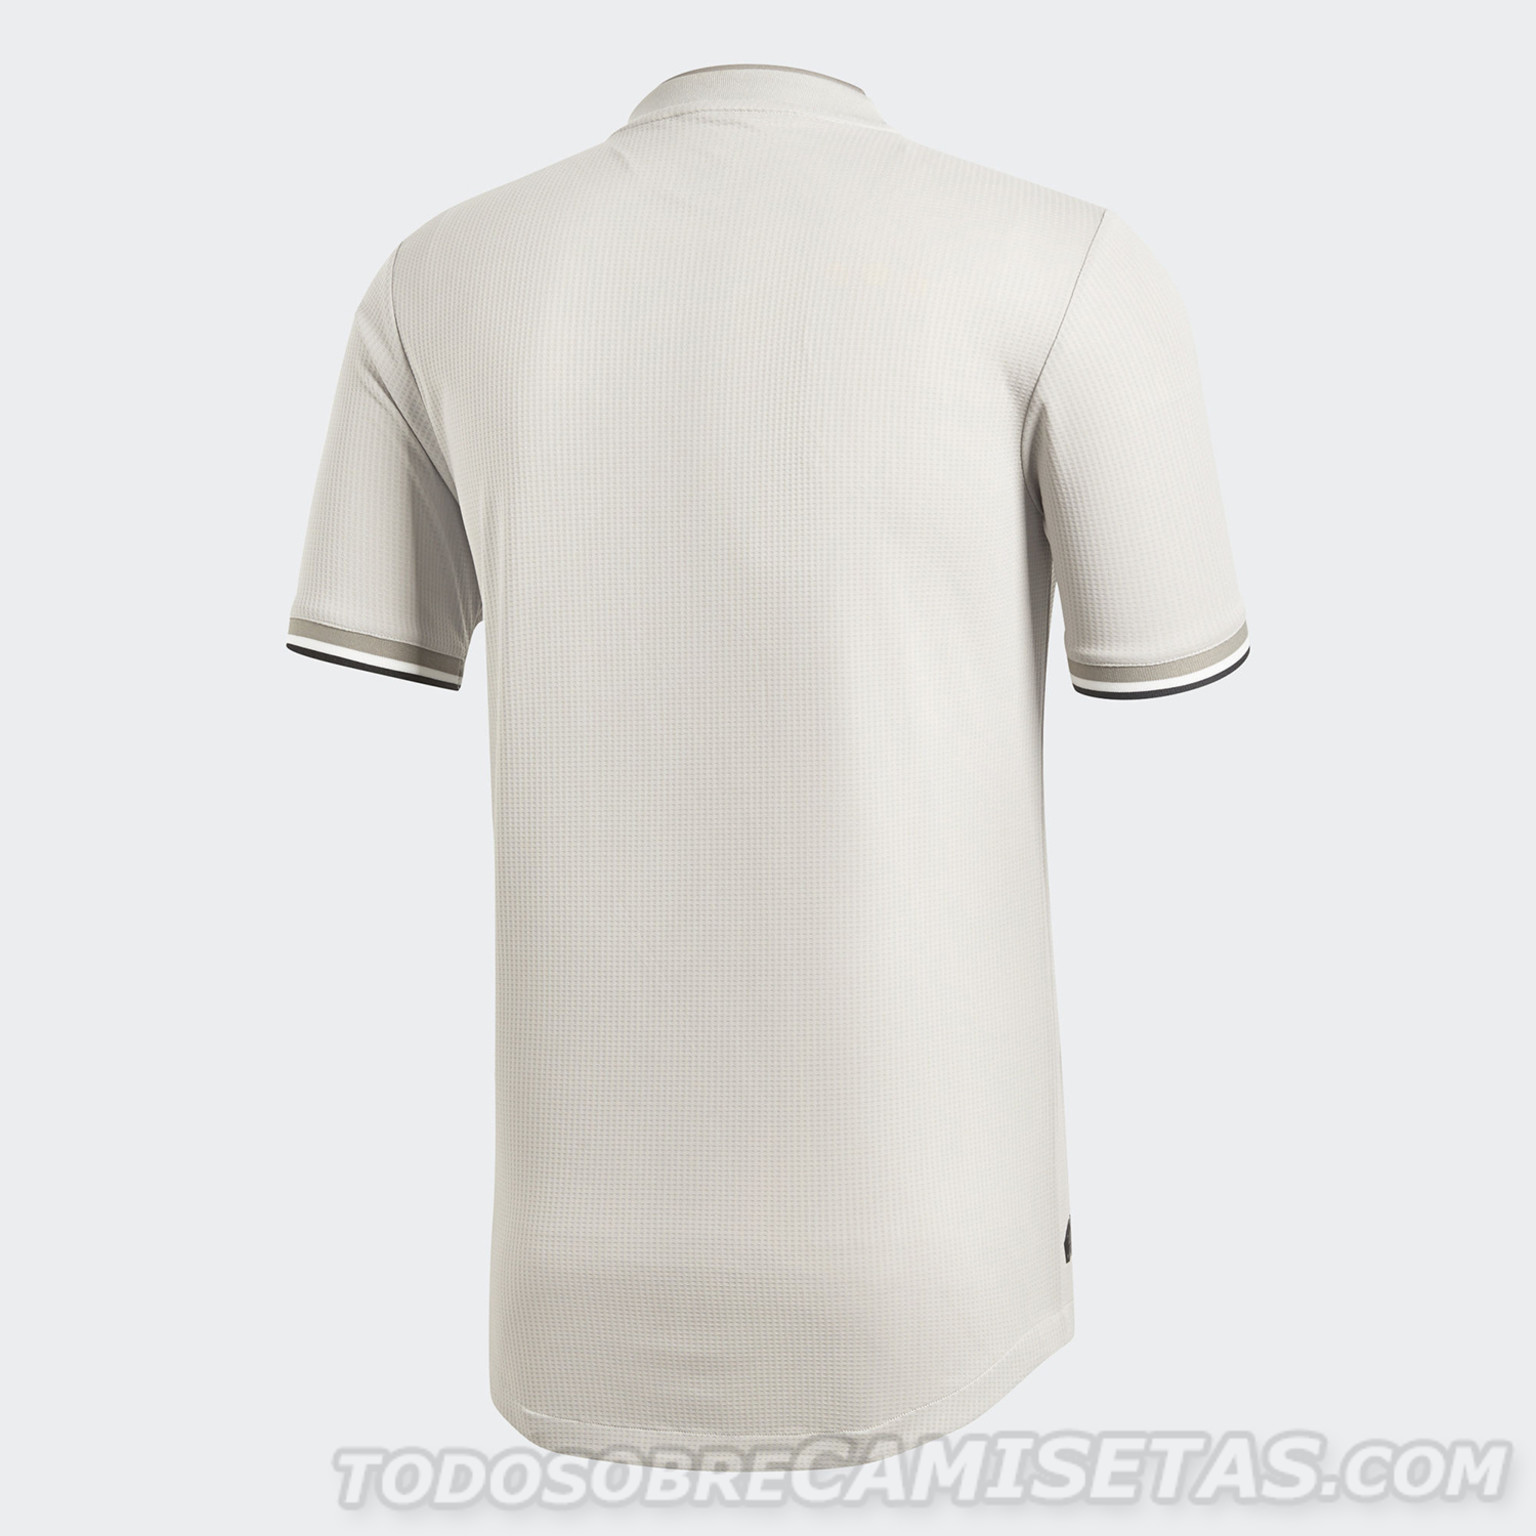 Juventus FC adidas Away Kit 2018-19